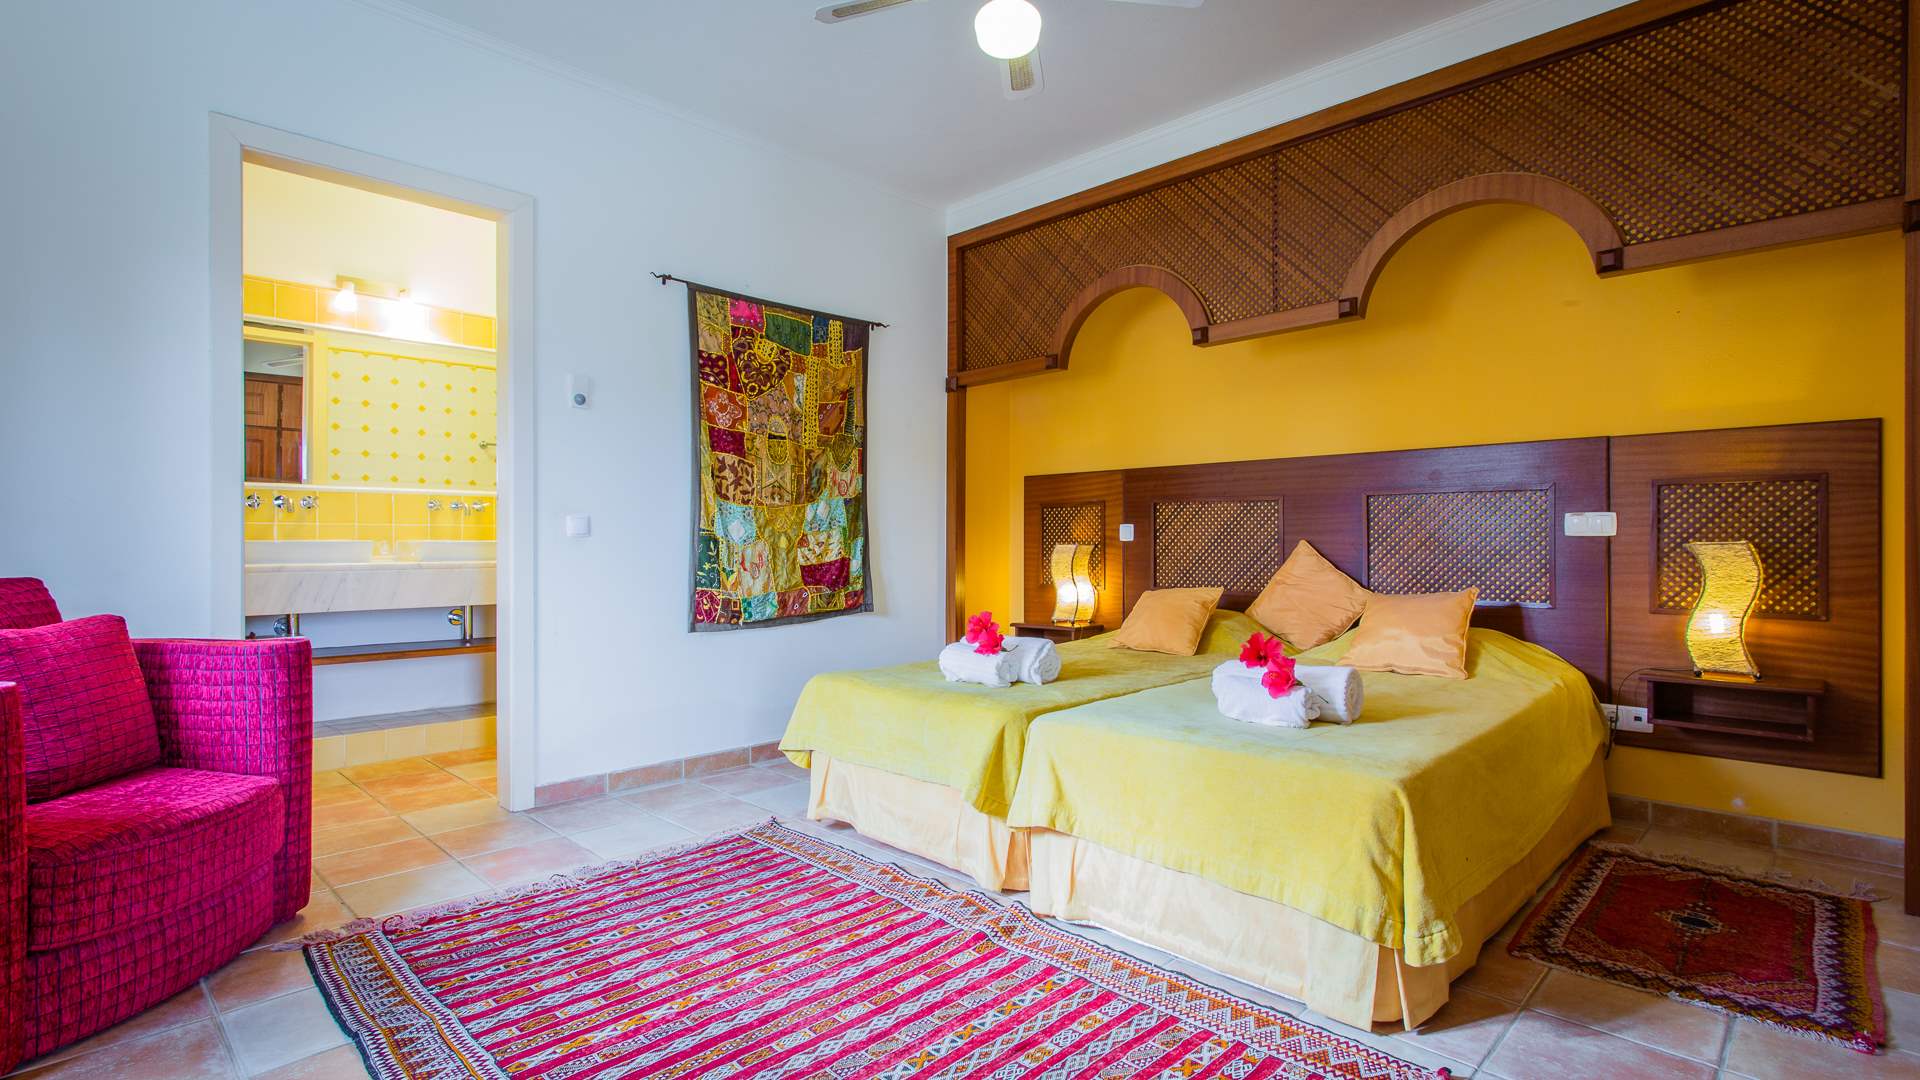 Casa Mouraria, 7 Bedrooms Rate, 7 bedroom villa in Carvoeiro Area, Algarve Photo #19